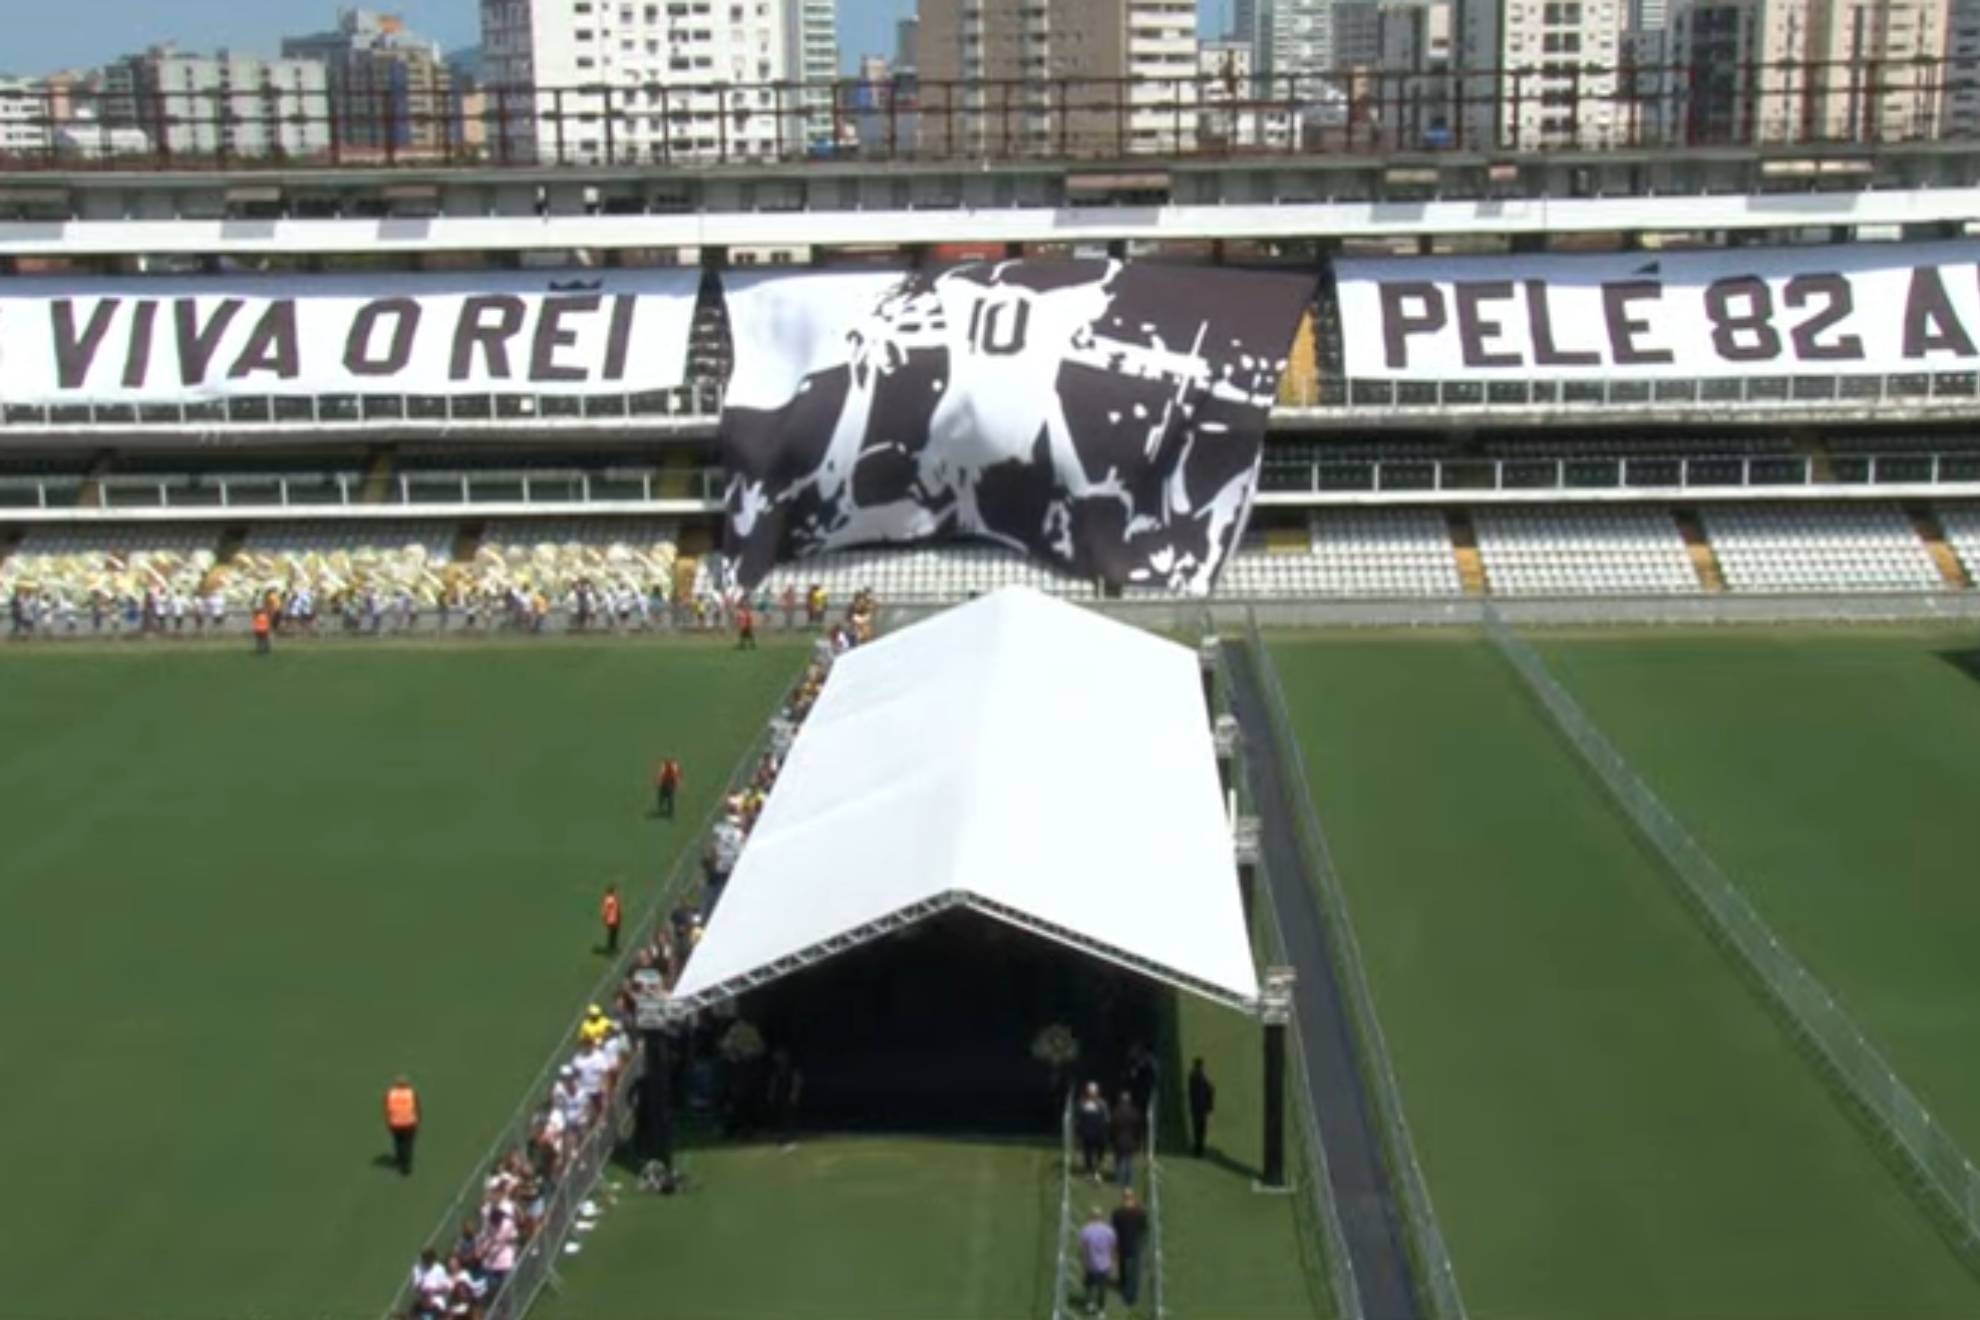 Funeral de Pelé EN VIVO: Fotos, videos y últimas noticias del último adiós al Rey del fútbol en directo